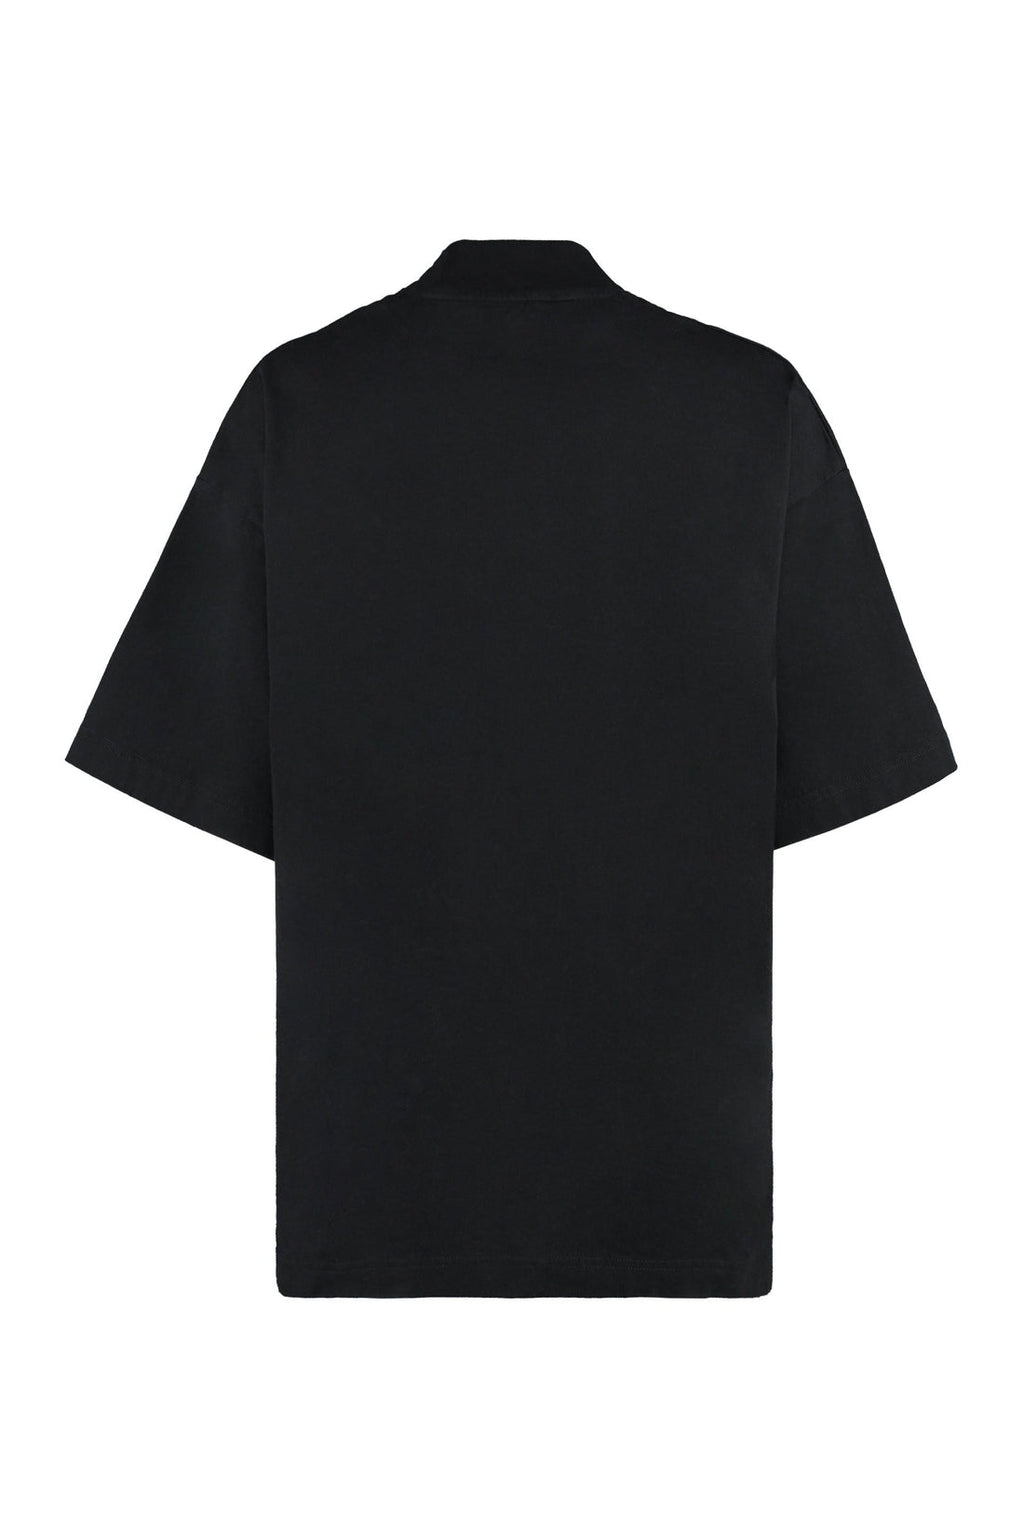 Palm Angels-OUTLET-SALE-Printed cotton T-shirt-ARCHIVIST